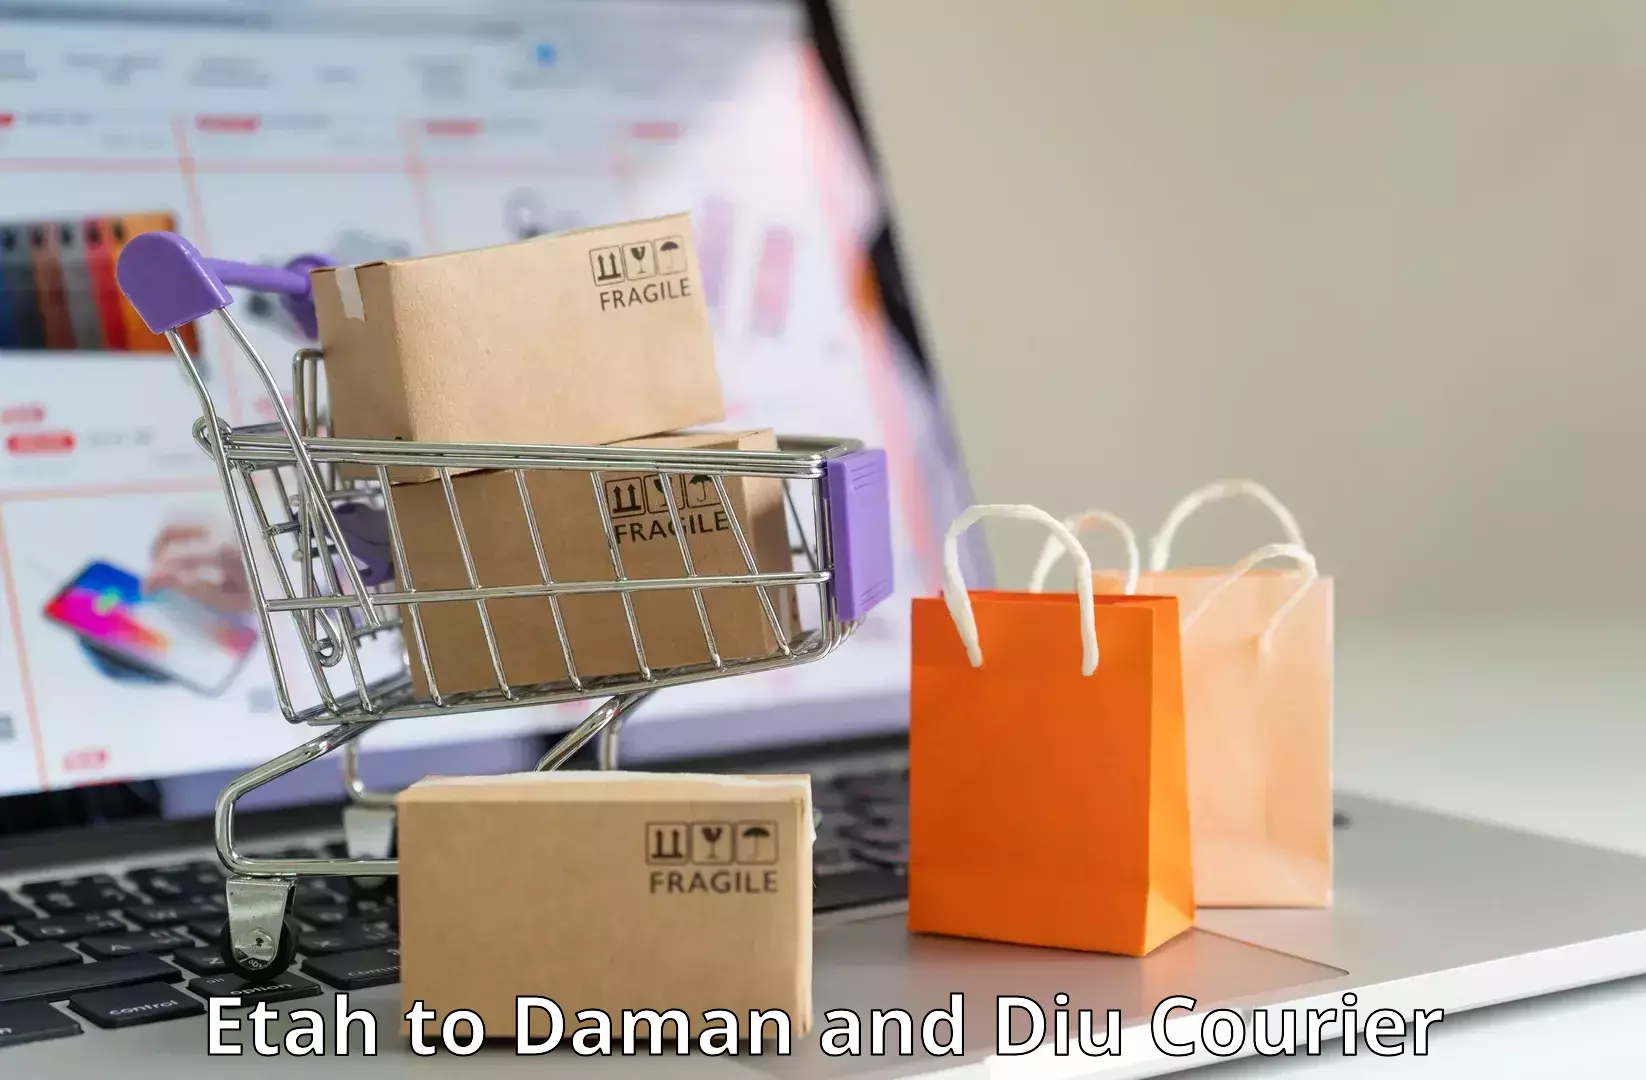 Digital courier platforms Etah to Daman